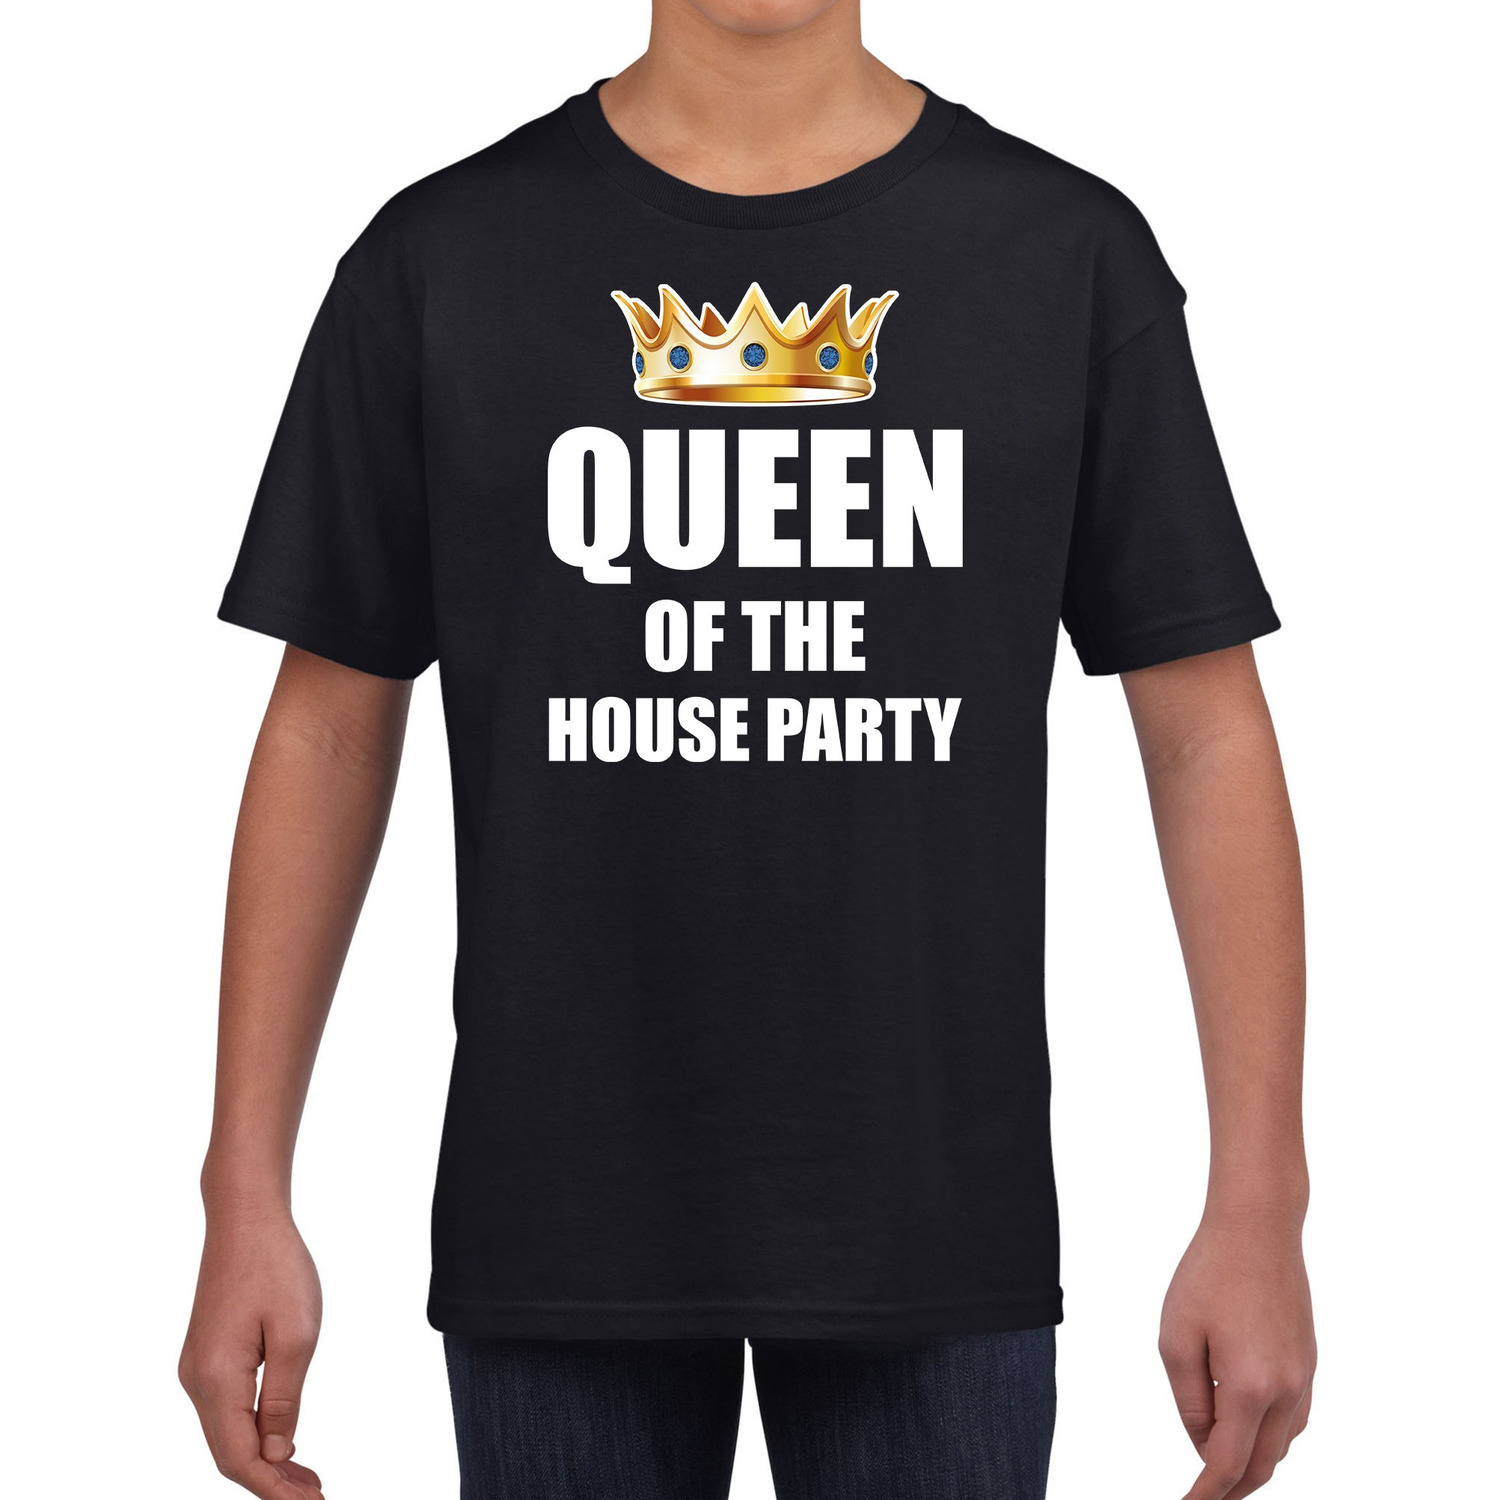 t shirt Queen of the house party zwart voor kinderen meisjes Woningsdag Koningsdag thuisblijvers luie dag relax shirtje